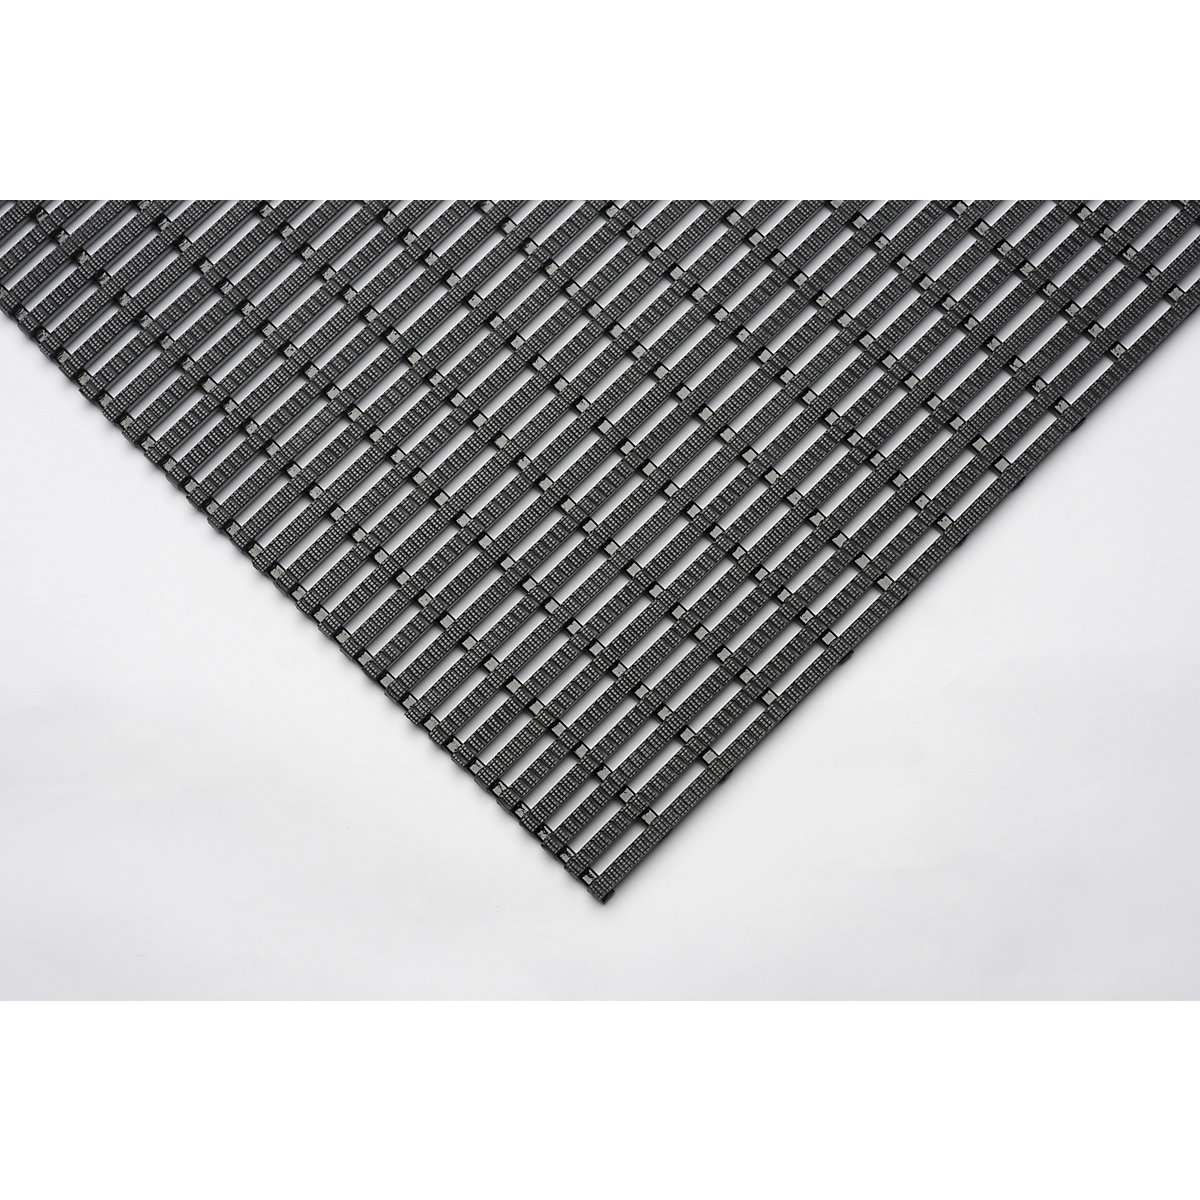 Industriematte, rutschhemmend, 10-m-Rolle, schwarz, Breite 600 mm